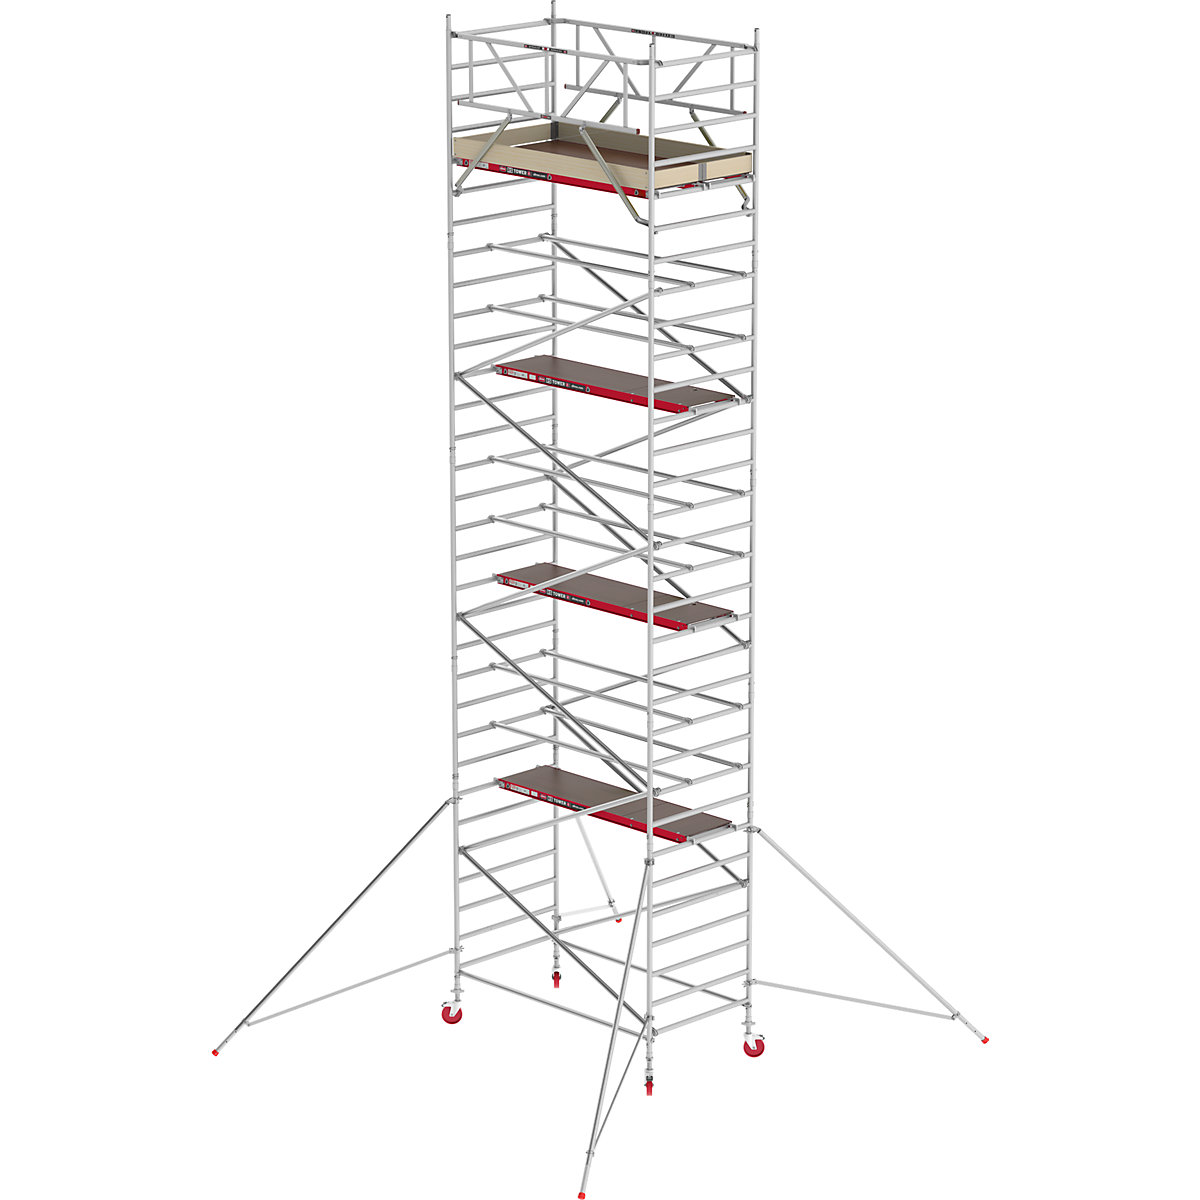 Trabattello mobile RS TOWER 42 largo – Altrex, piattaforma in legno, lunghezza 2,45 m, altezza di lavoro 10,20 m-1